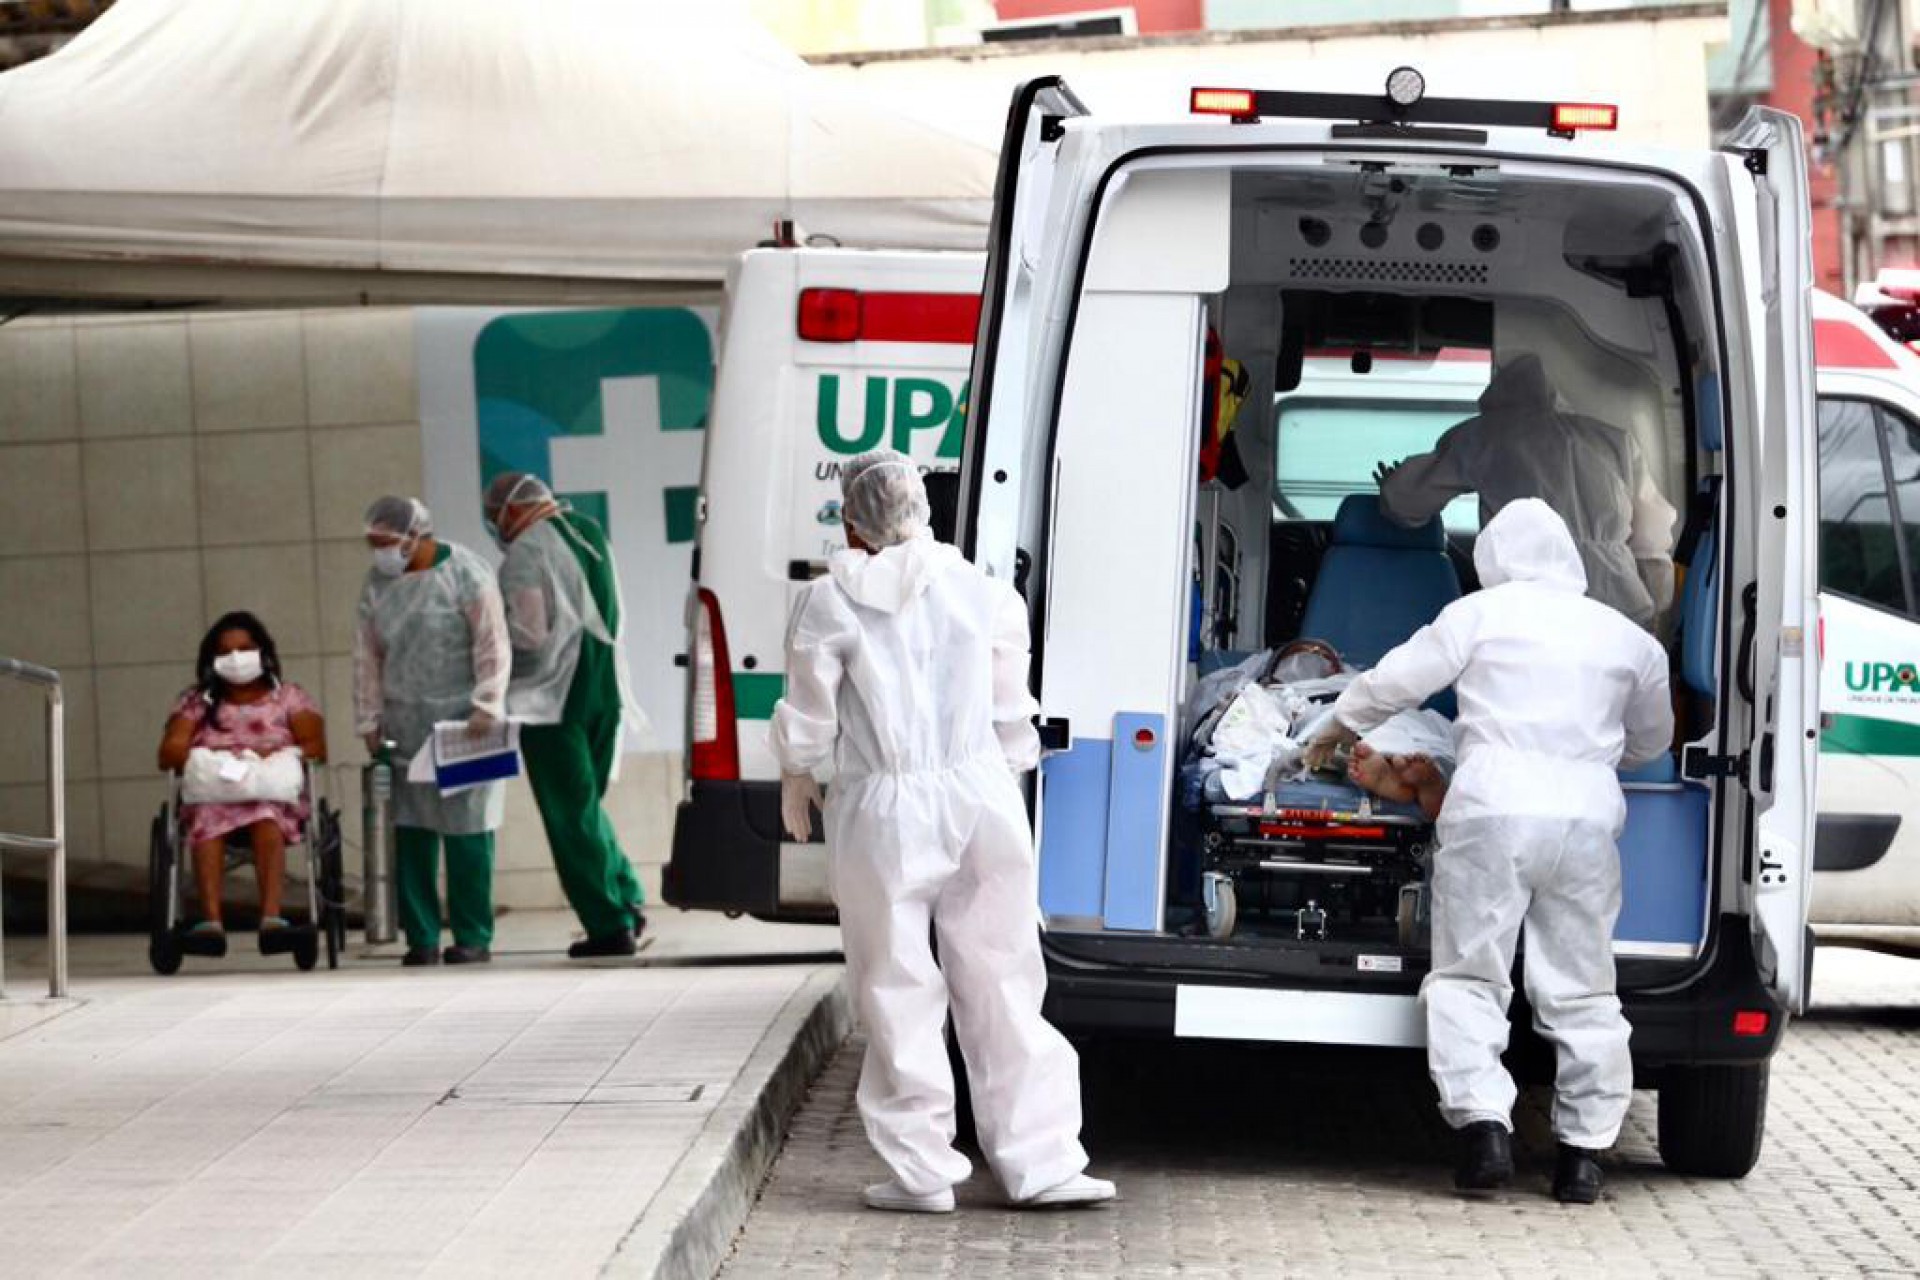 ￼MOVIMENTAÇÃO de ambulâncias no Hospital Leonardo da Vinci causada por transferência de pacientes (Foto: fotos Fabio Lima)